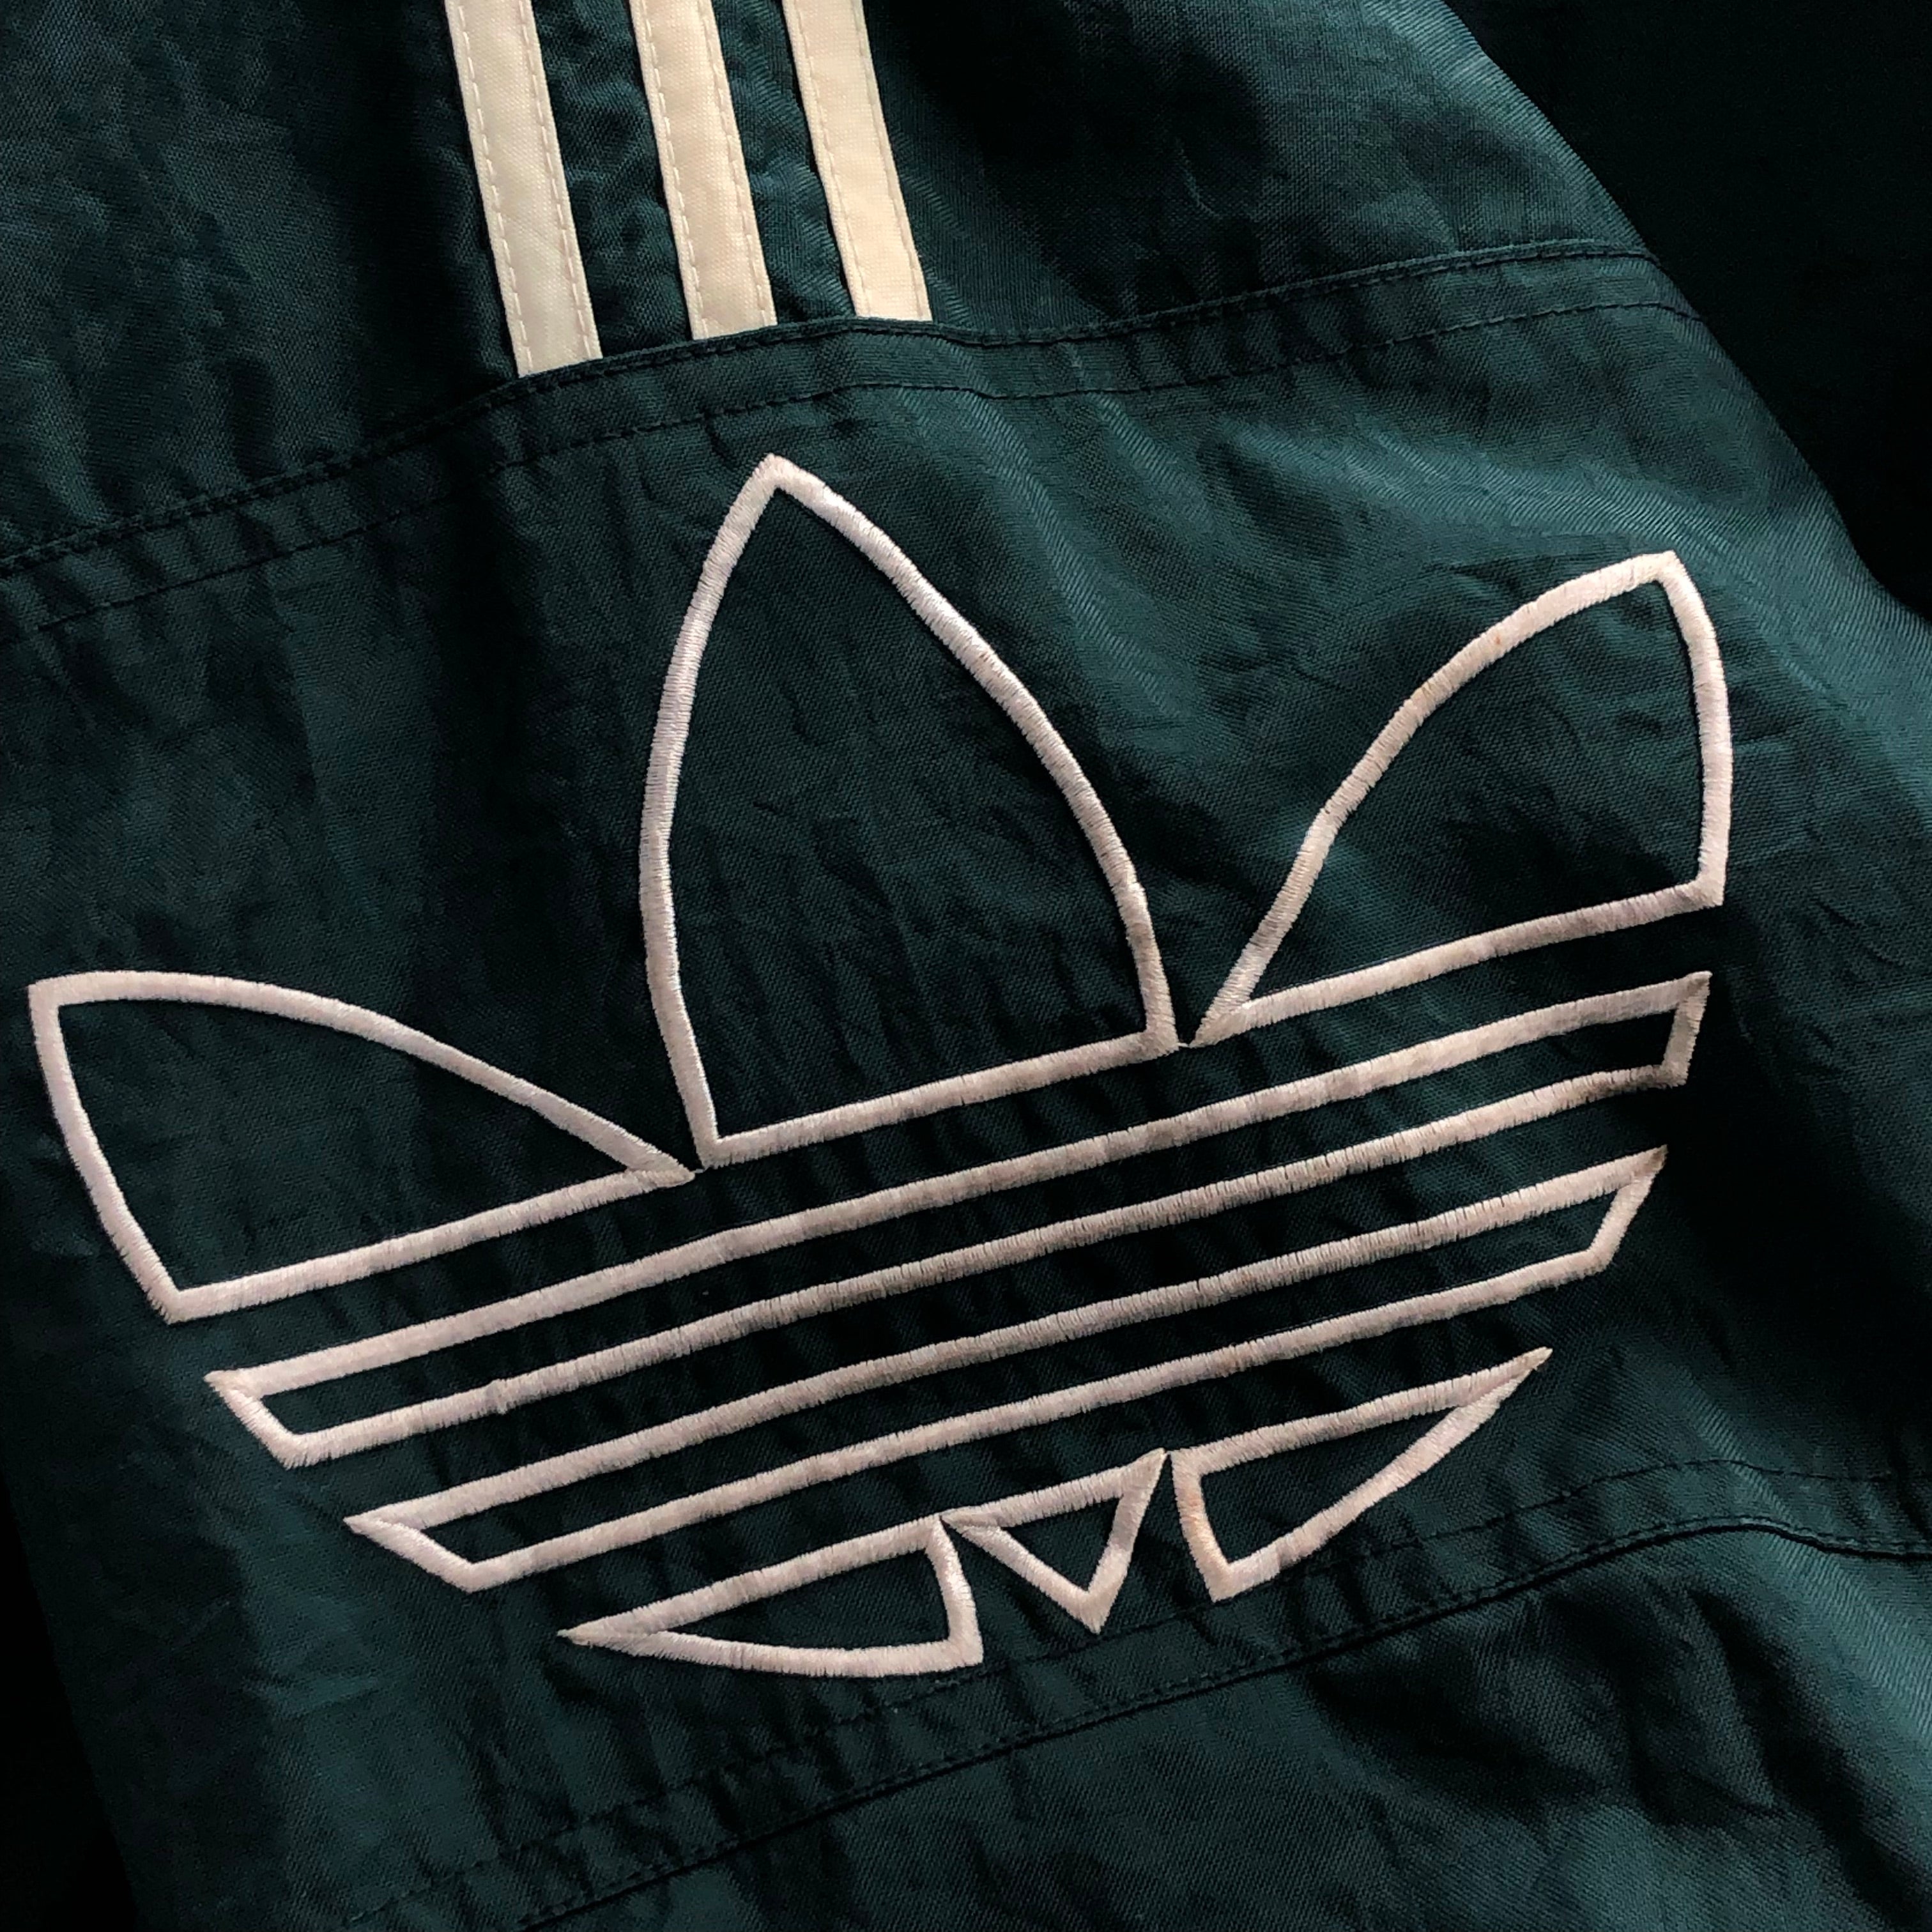 Vintage Adidas Jacket